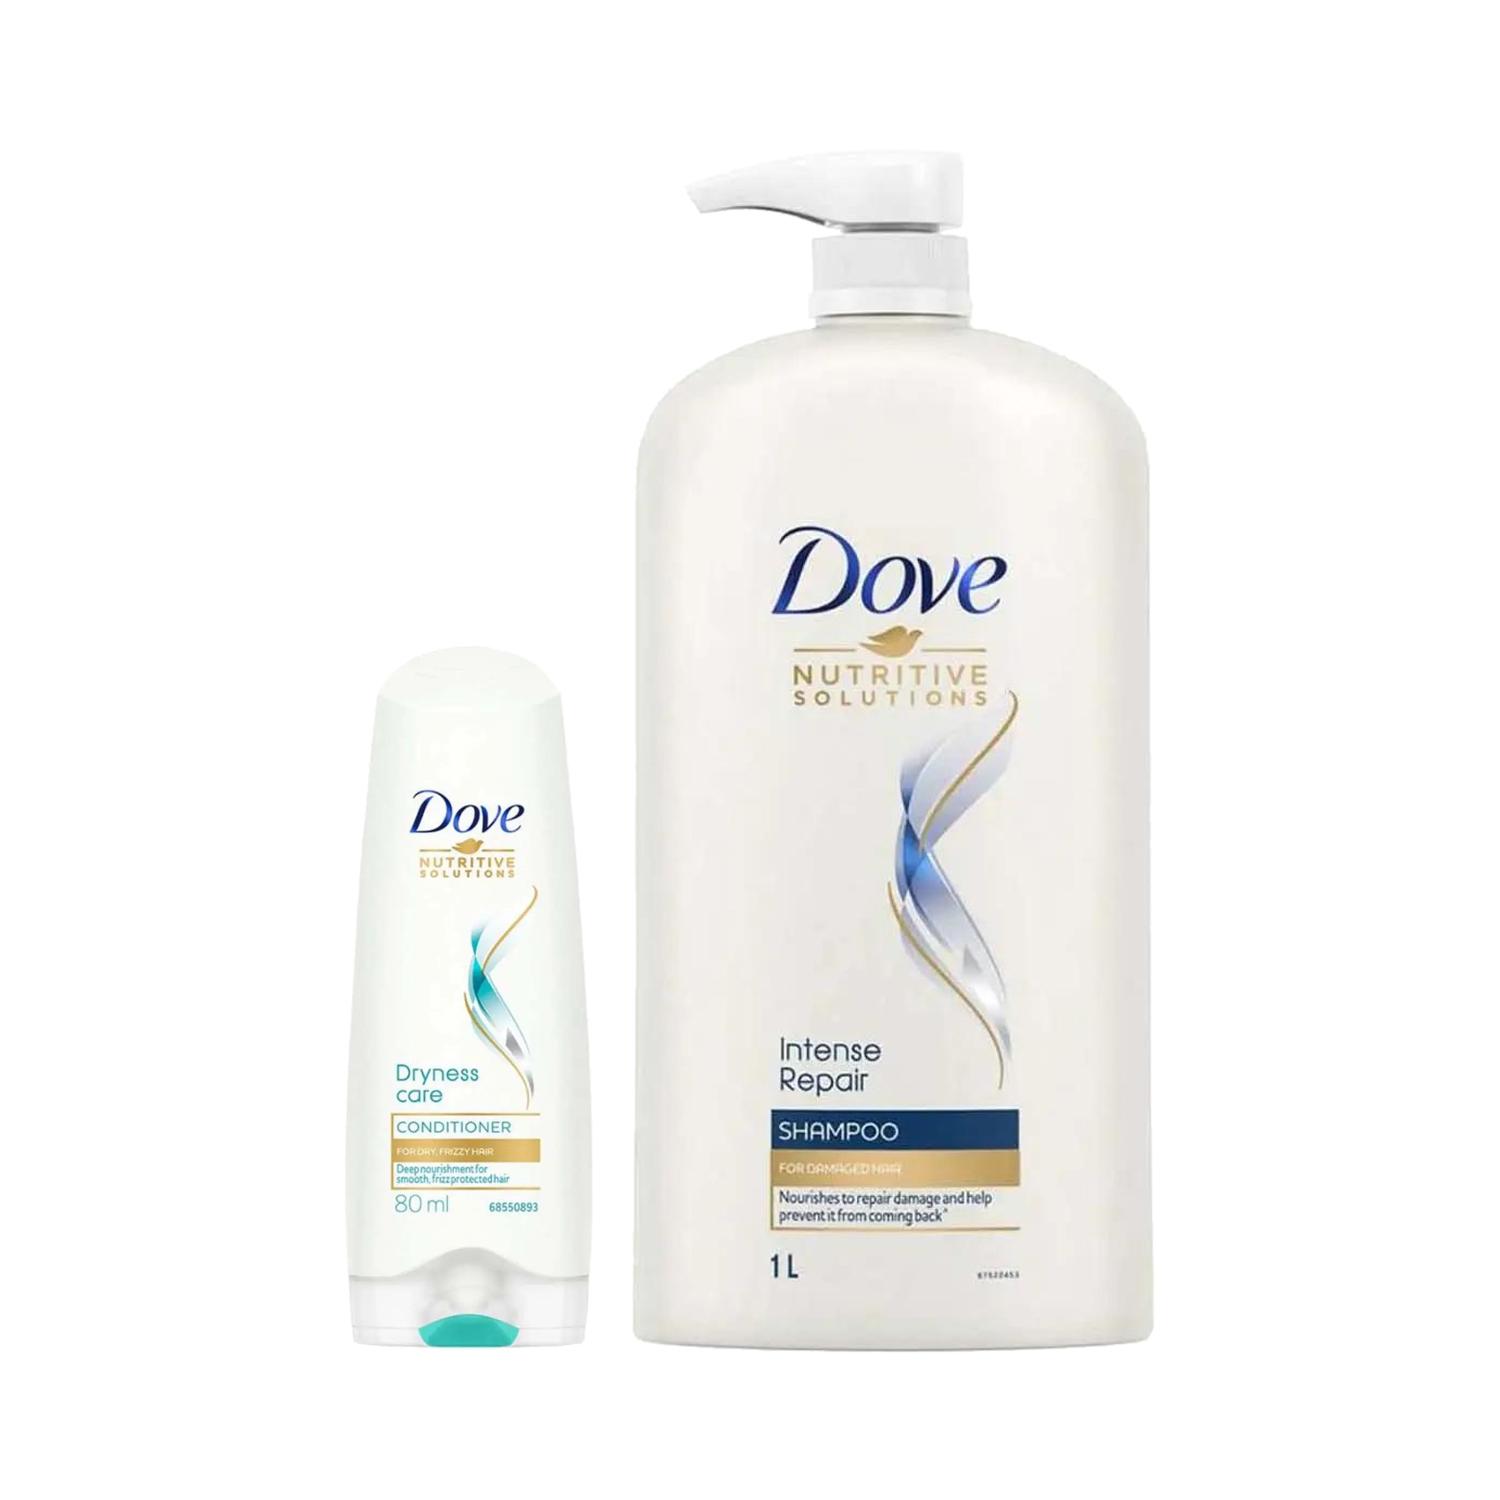 Dove | Dove Intense Repair Shampoo (1000 ml) + Dryness Care Conditioner (175 ml) Combo